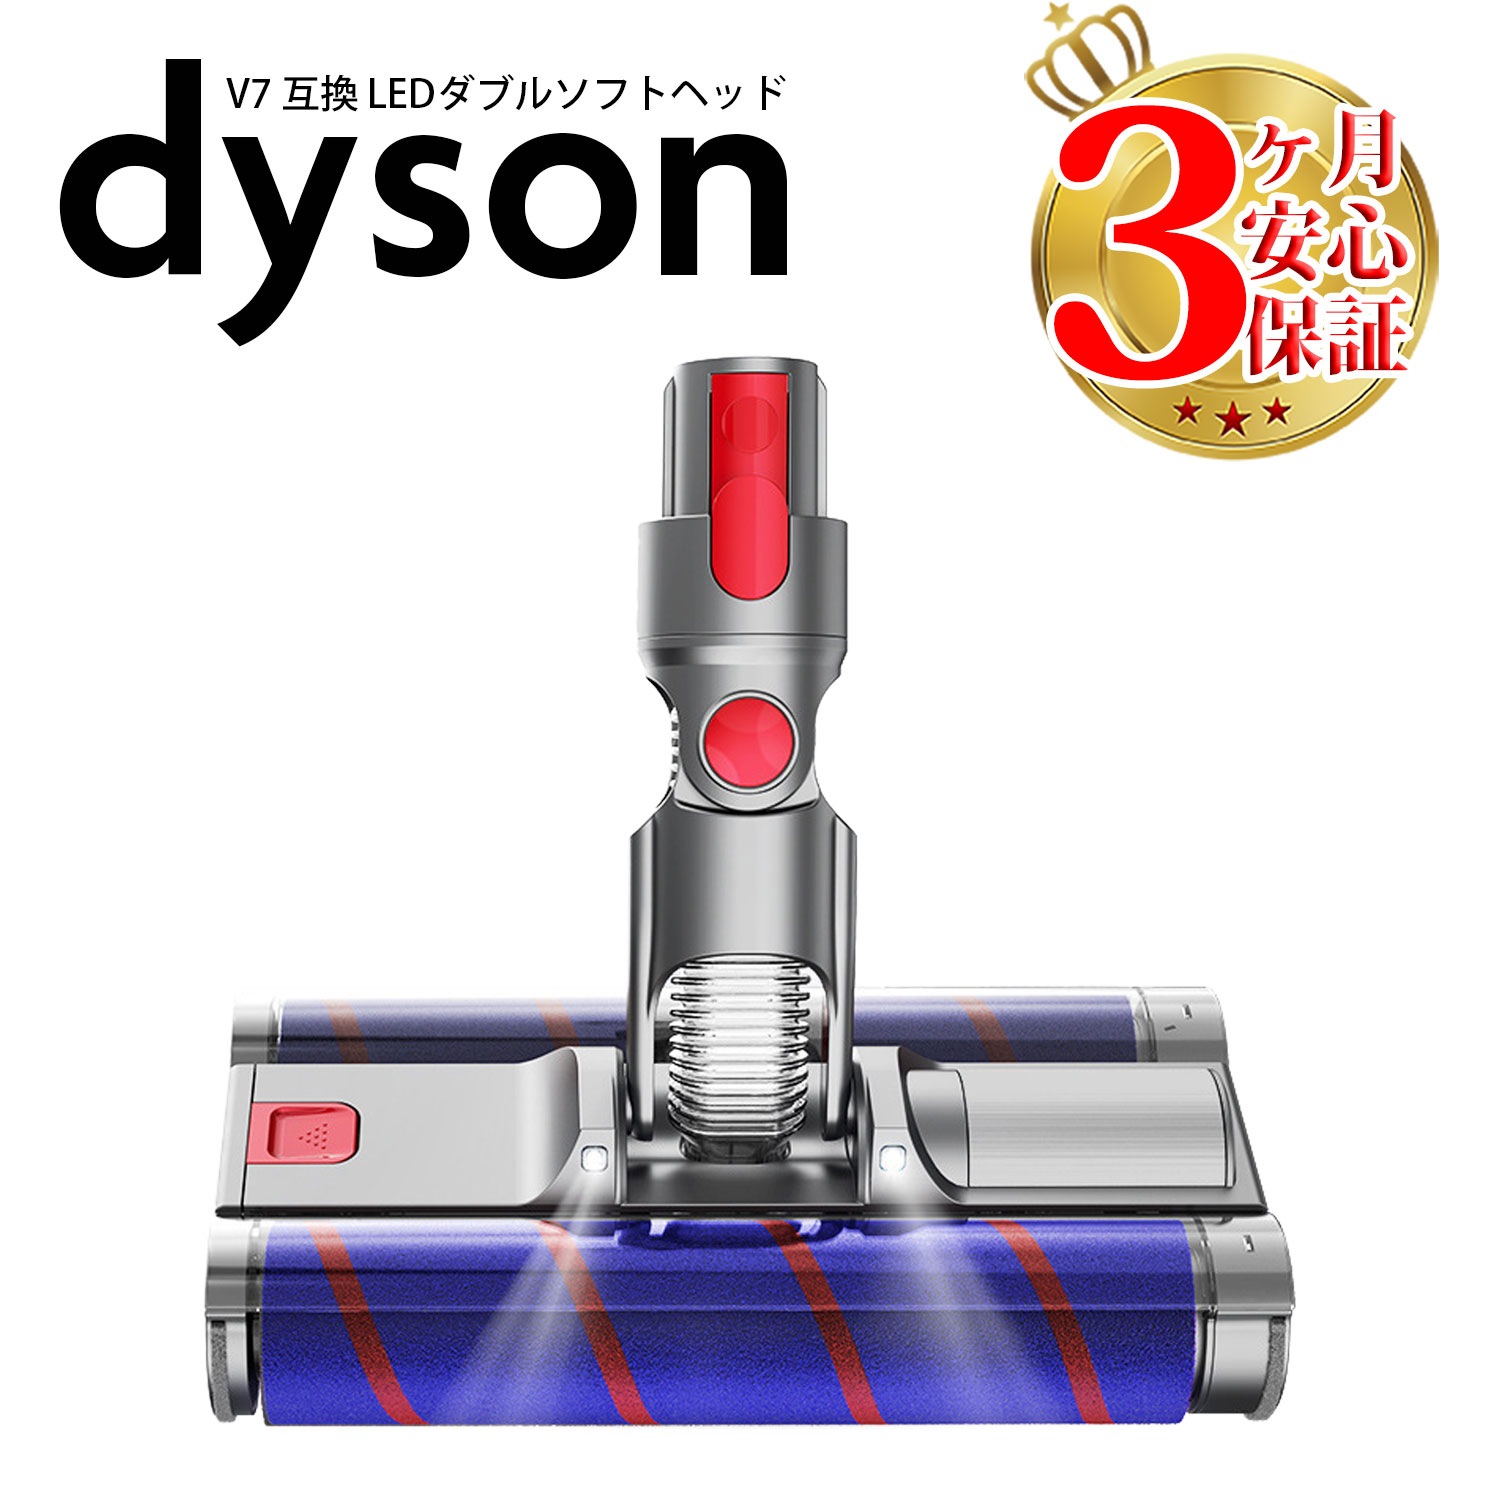 安価 Dyson V7 mattress ハンディクリーナー ソフトローラー+スタンド